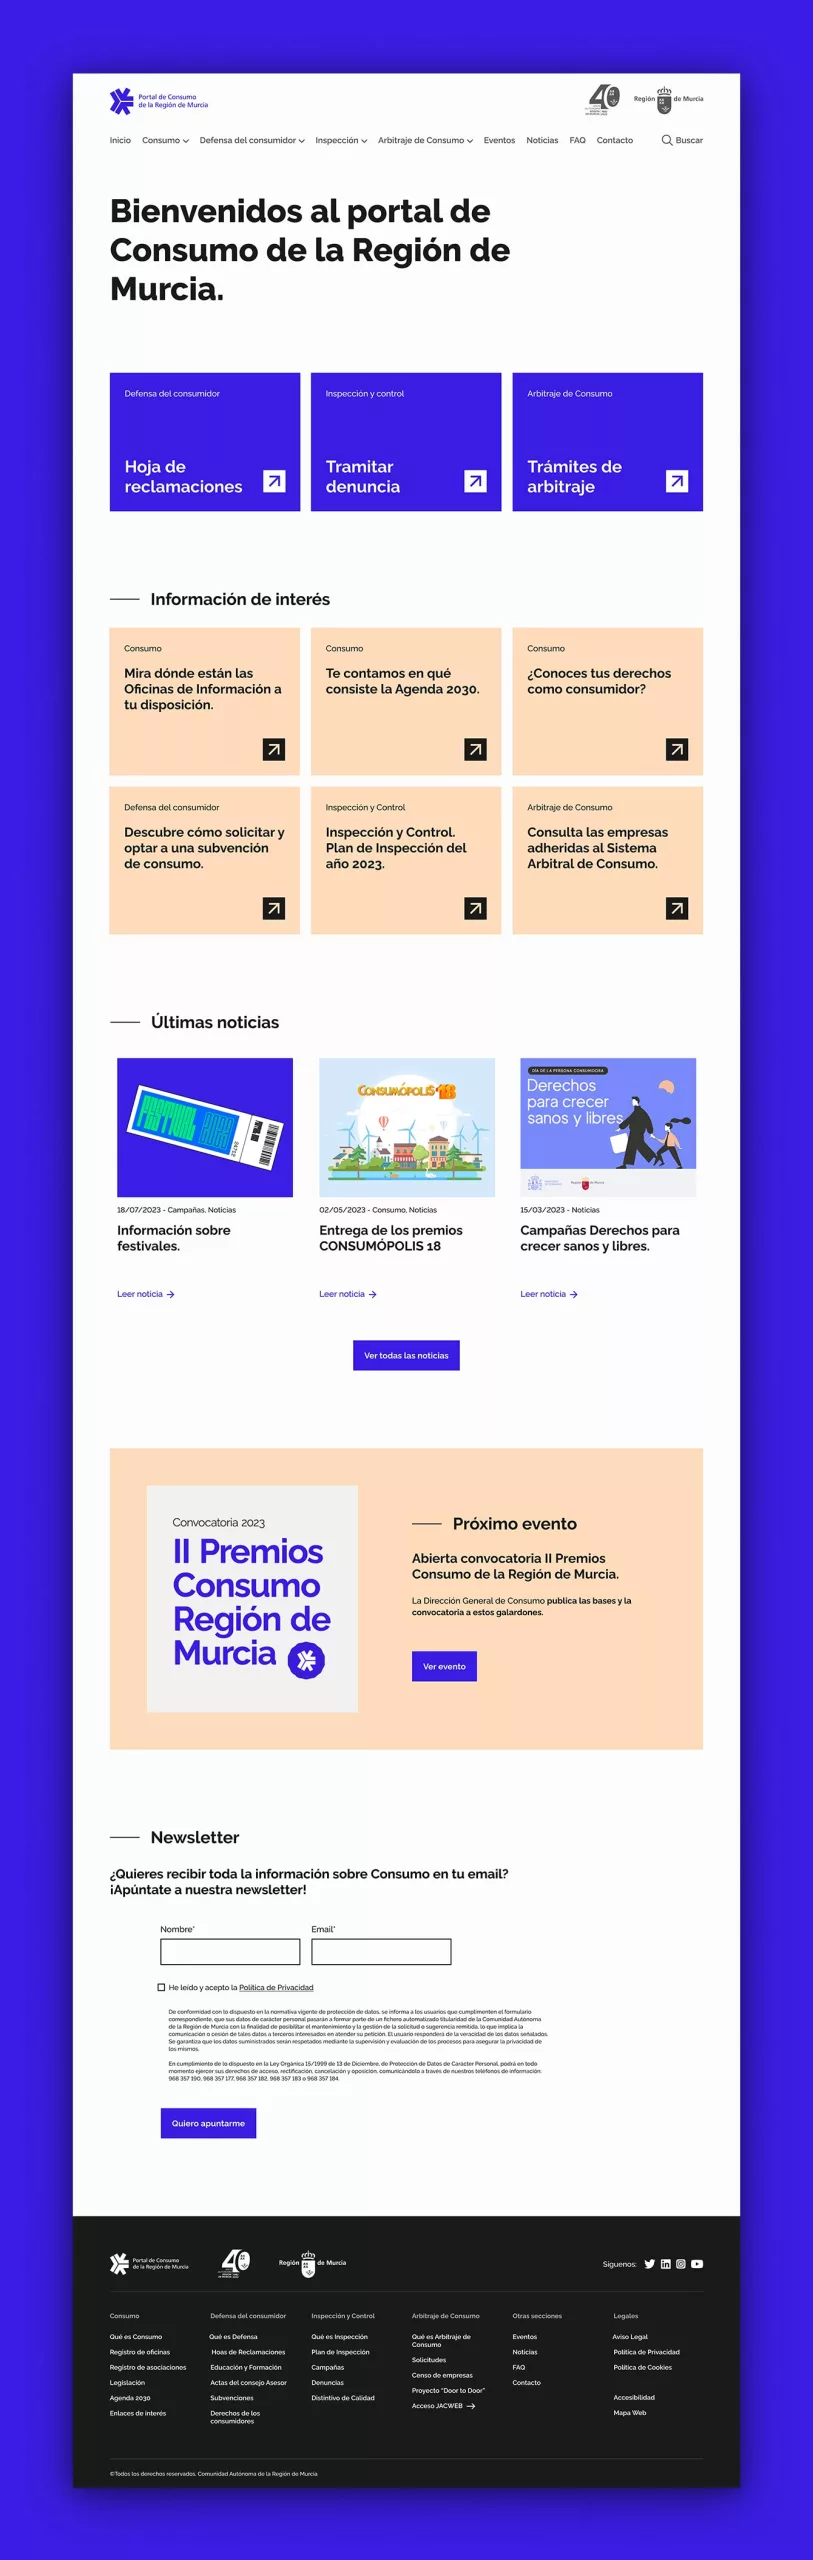 Vistazo general de la web de Consumo de la Región de Murcia